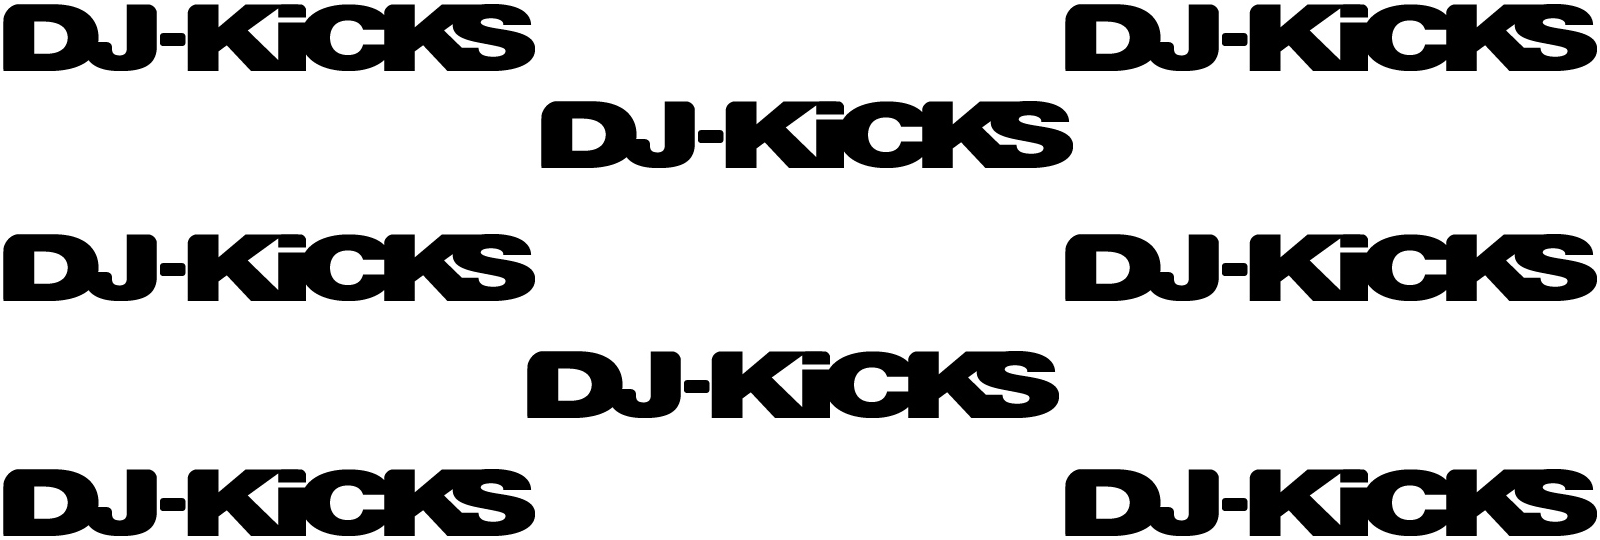 DJ Kicks 